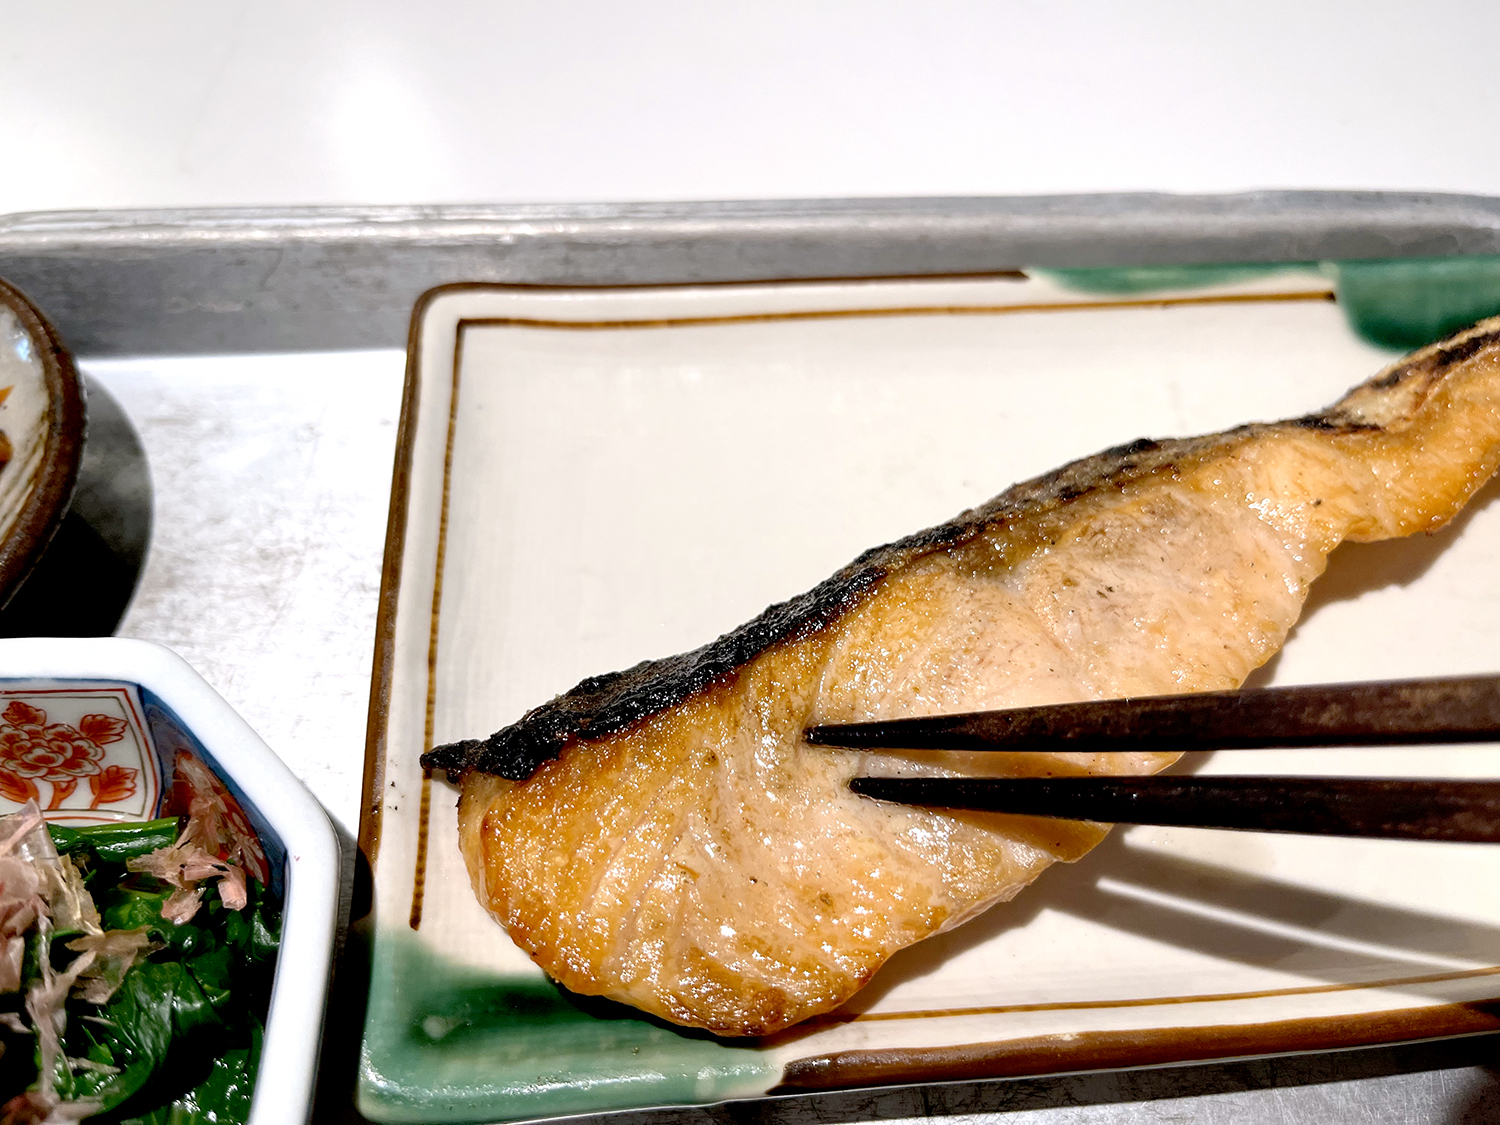 鮭に箸を入れた途端、じゅわ〜っと脂が浮いてきた。これだけ食べるとしょっぱく感じたが、銀シャリとの相性はバツグン。